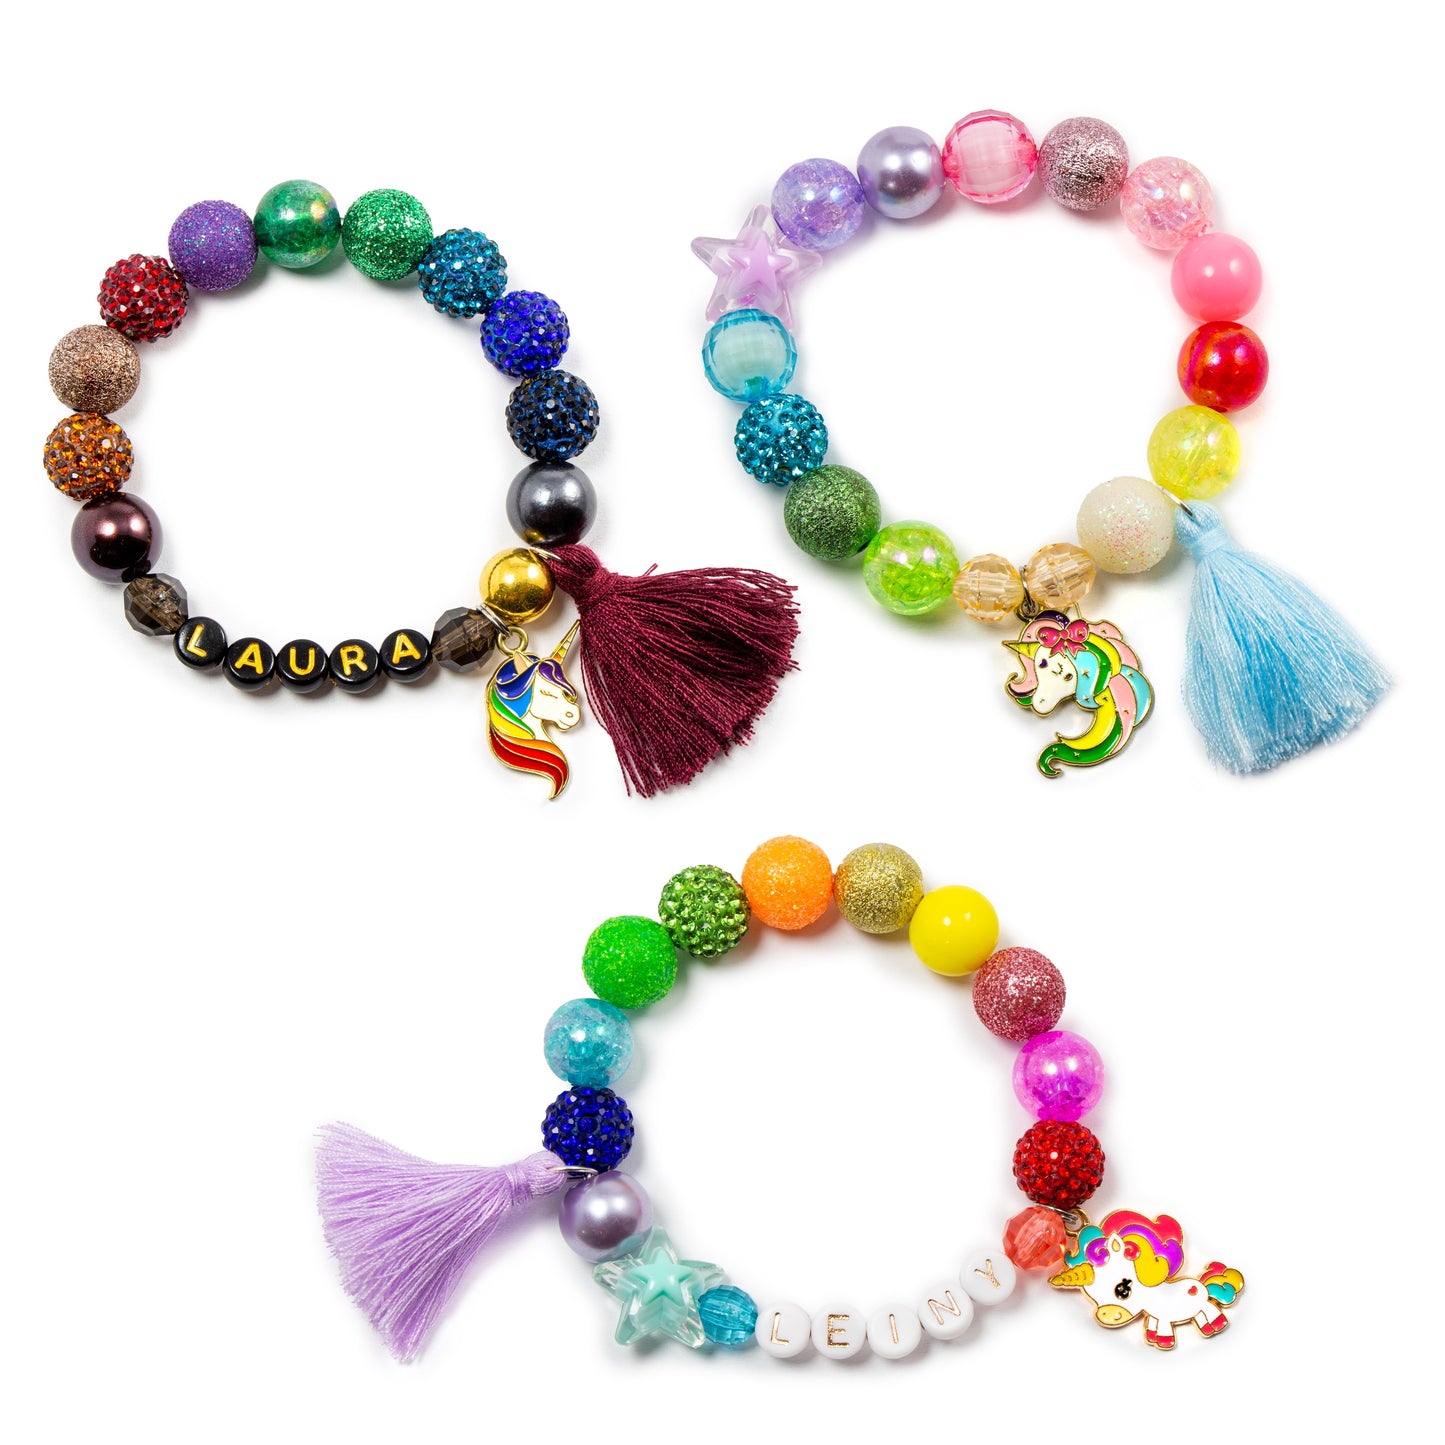 Girls unicorn charm pastel tassel bracelet / Personalized jewelry stretch